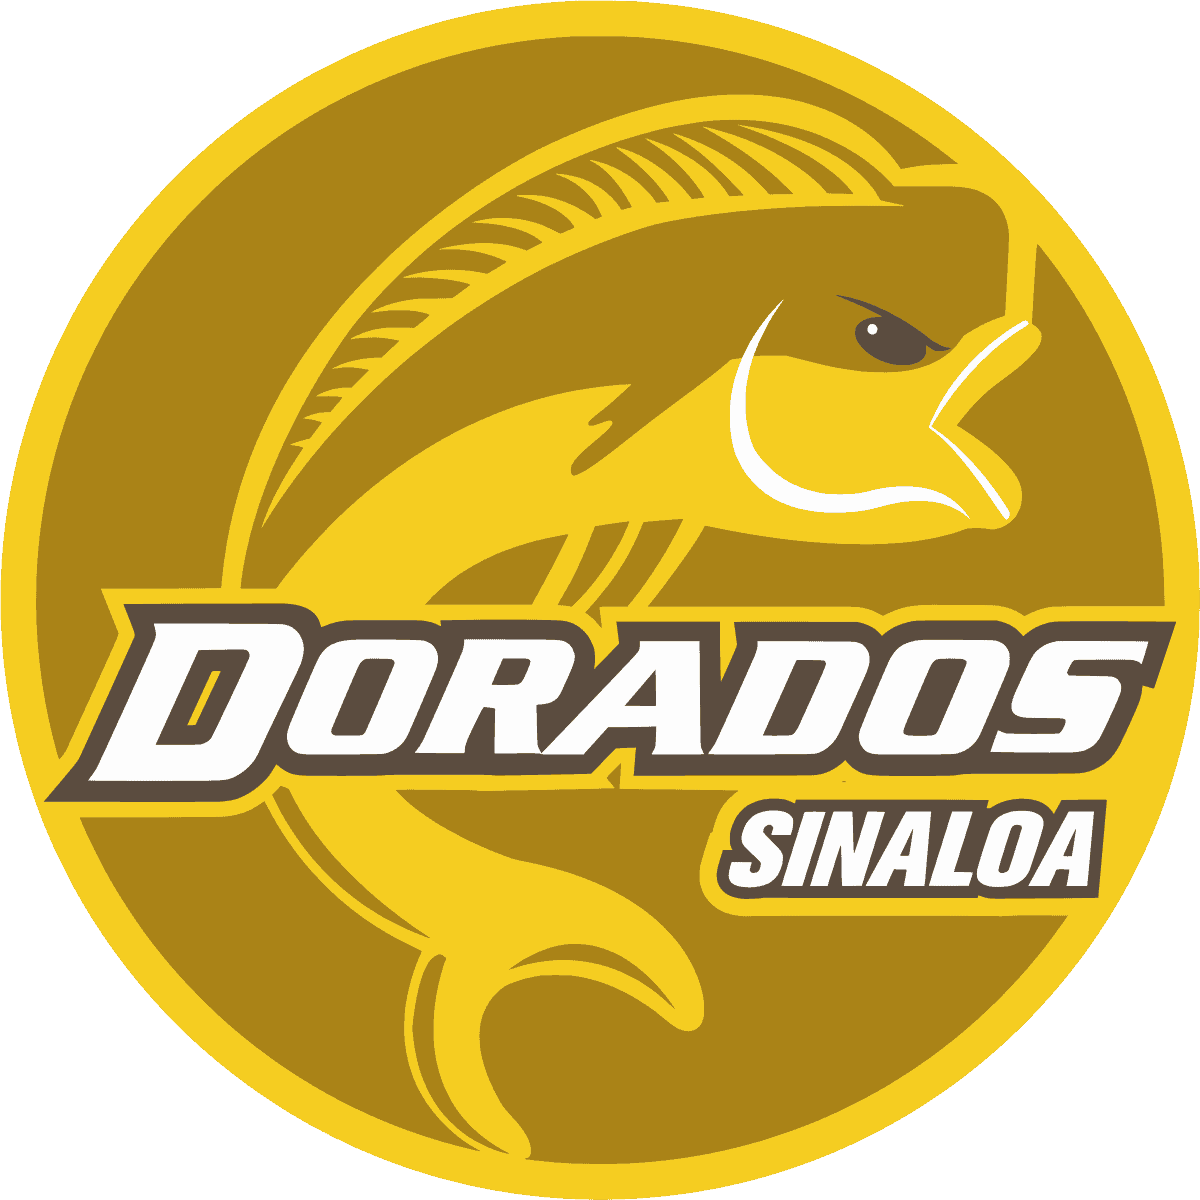 Dorados de Sinaloa (Liga MX 2)